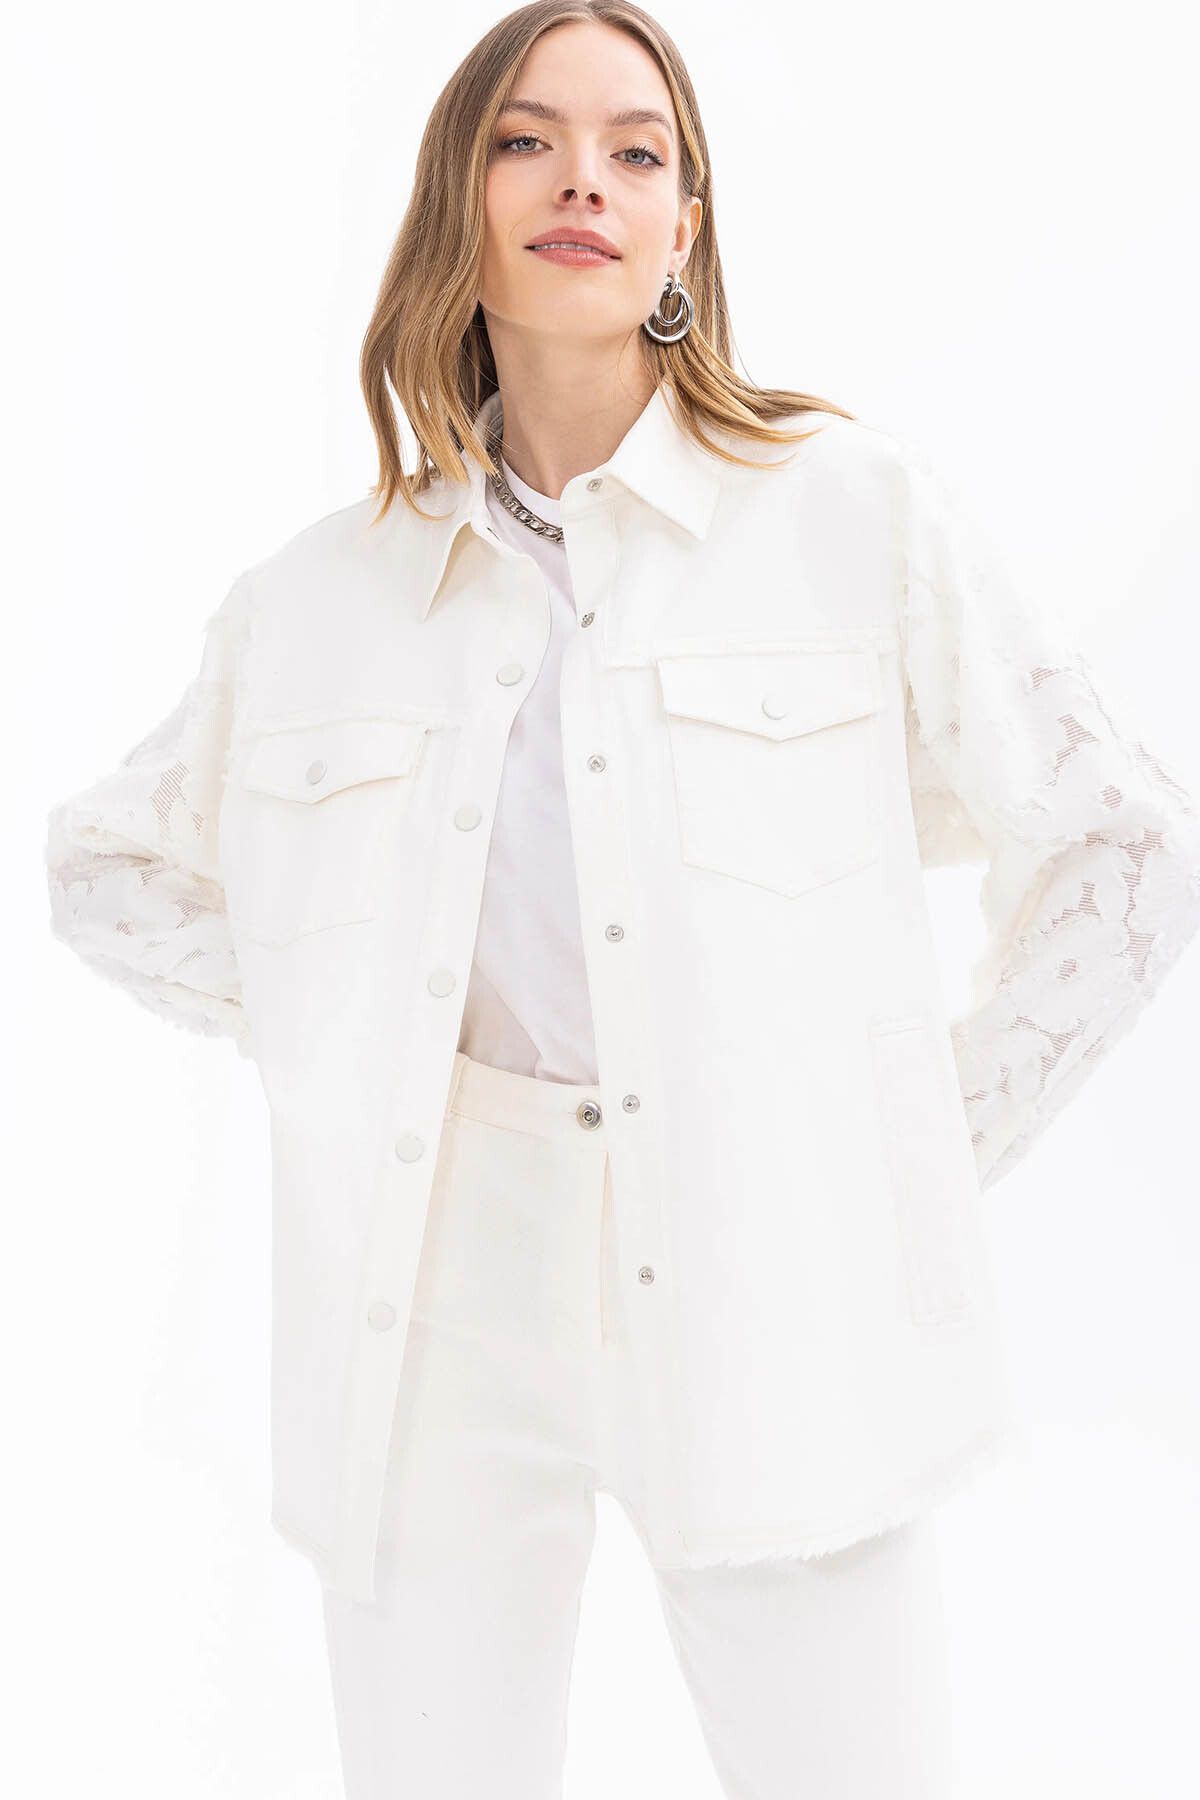 SEÇİL Seçil Kadın Çift Kumaşlı Çıtçıt Düğmeli Ceket 1005 Beyaz